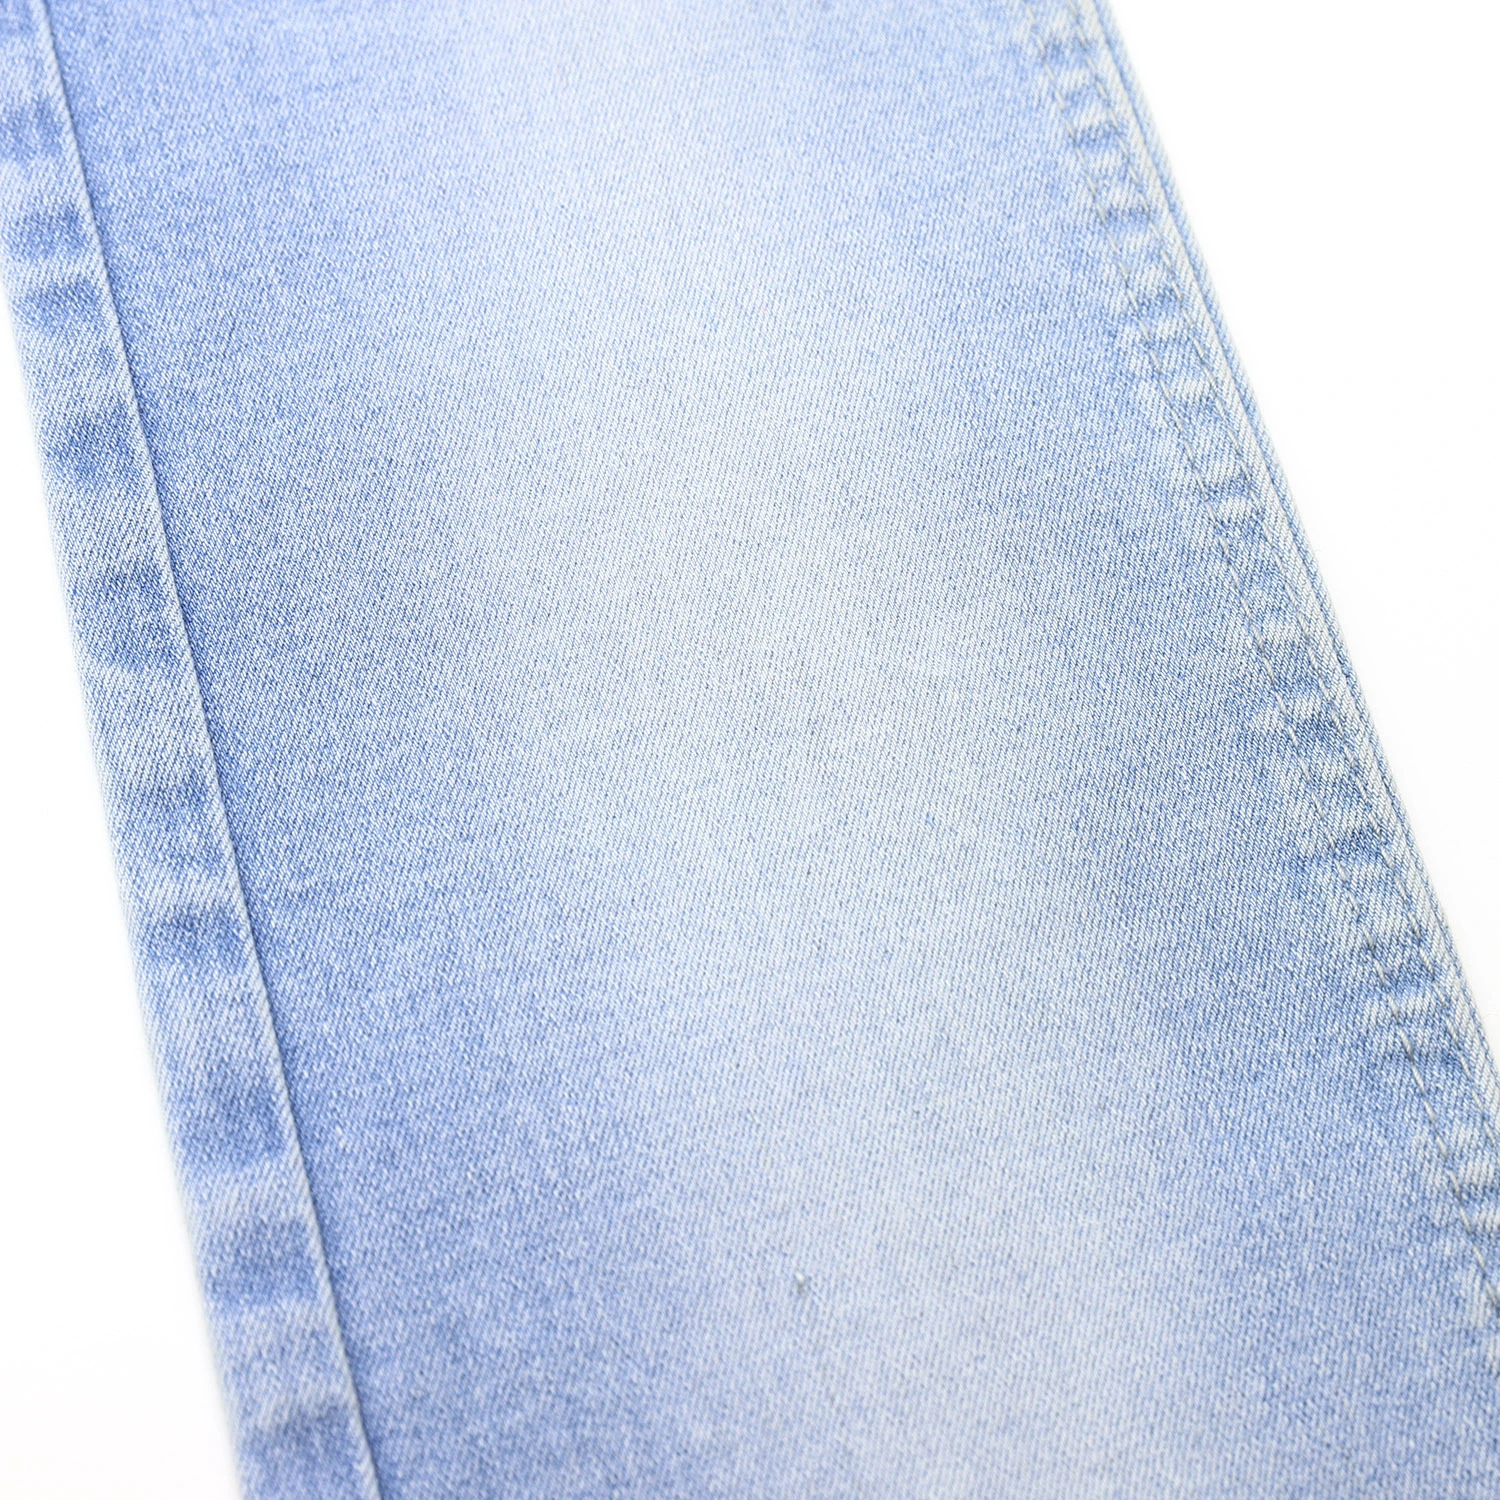 205F-3 10.4oz 10*21 Indigo Color High Stretch Cotton Denim Fabric for Jeans 4